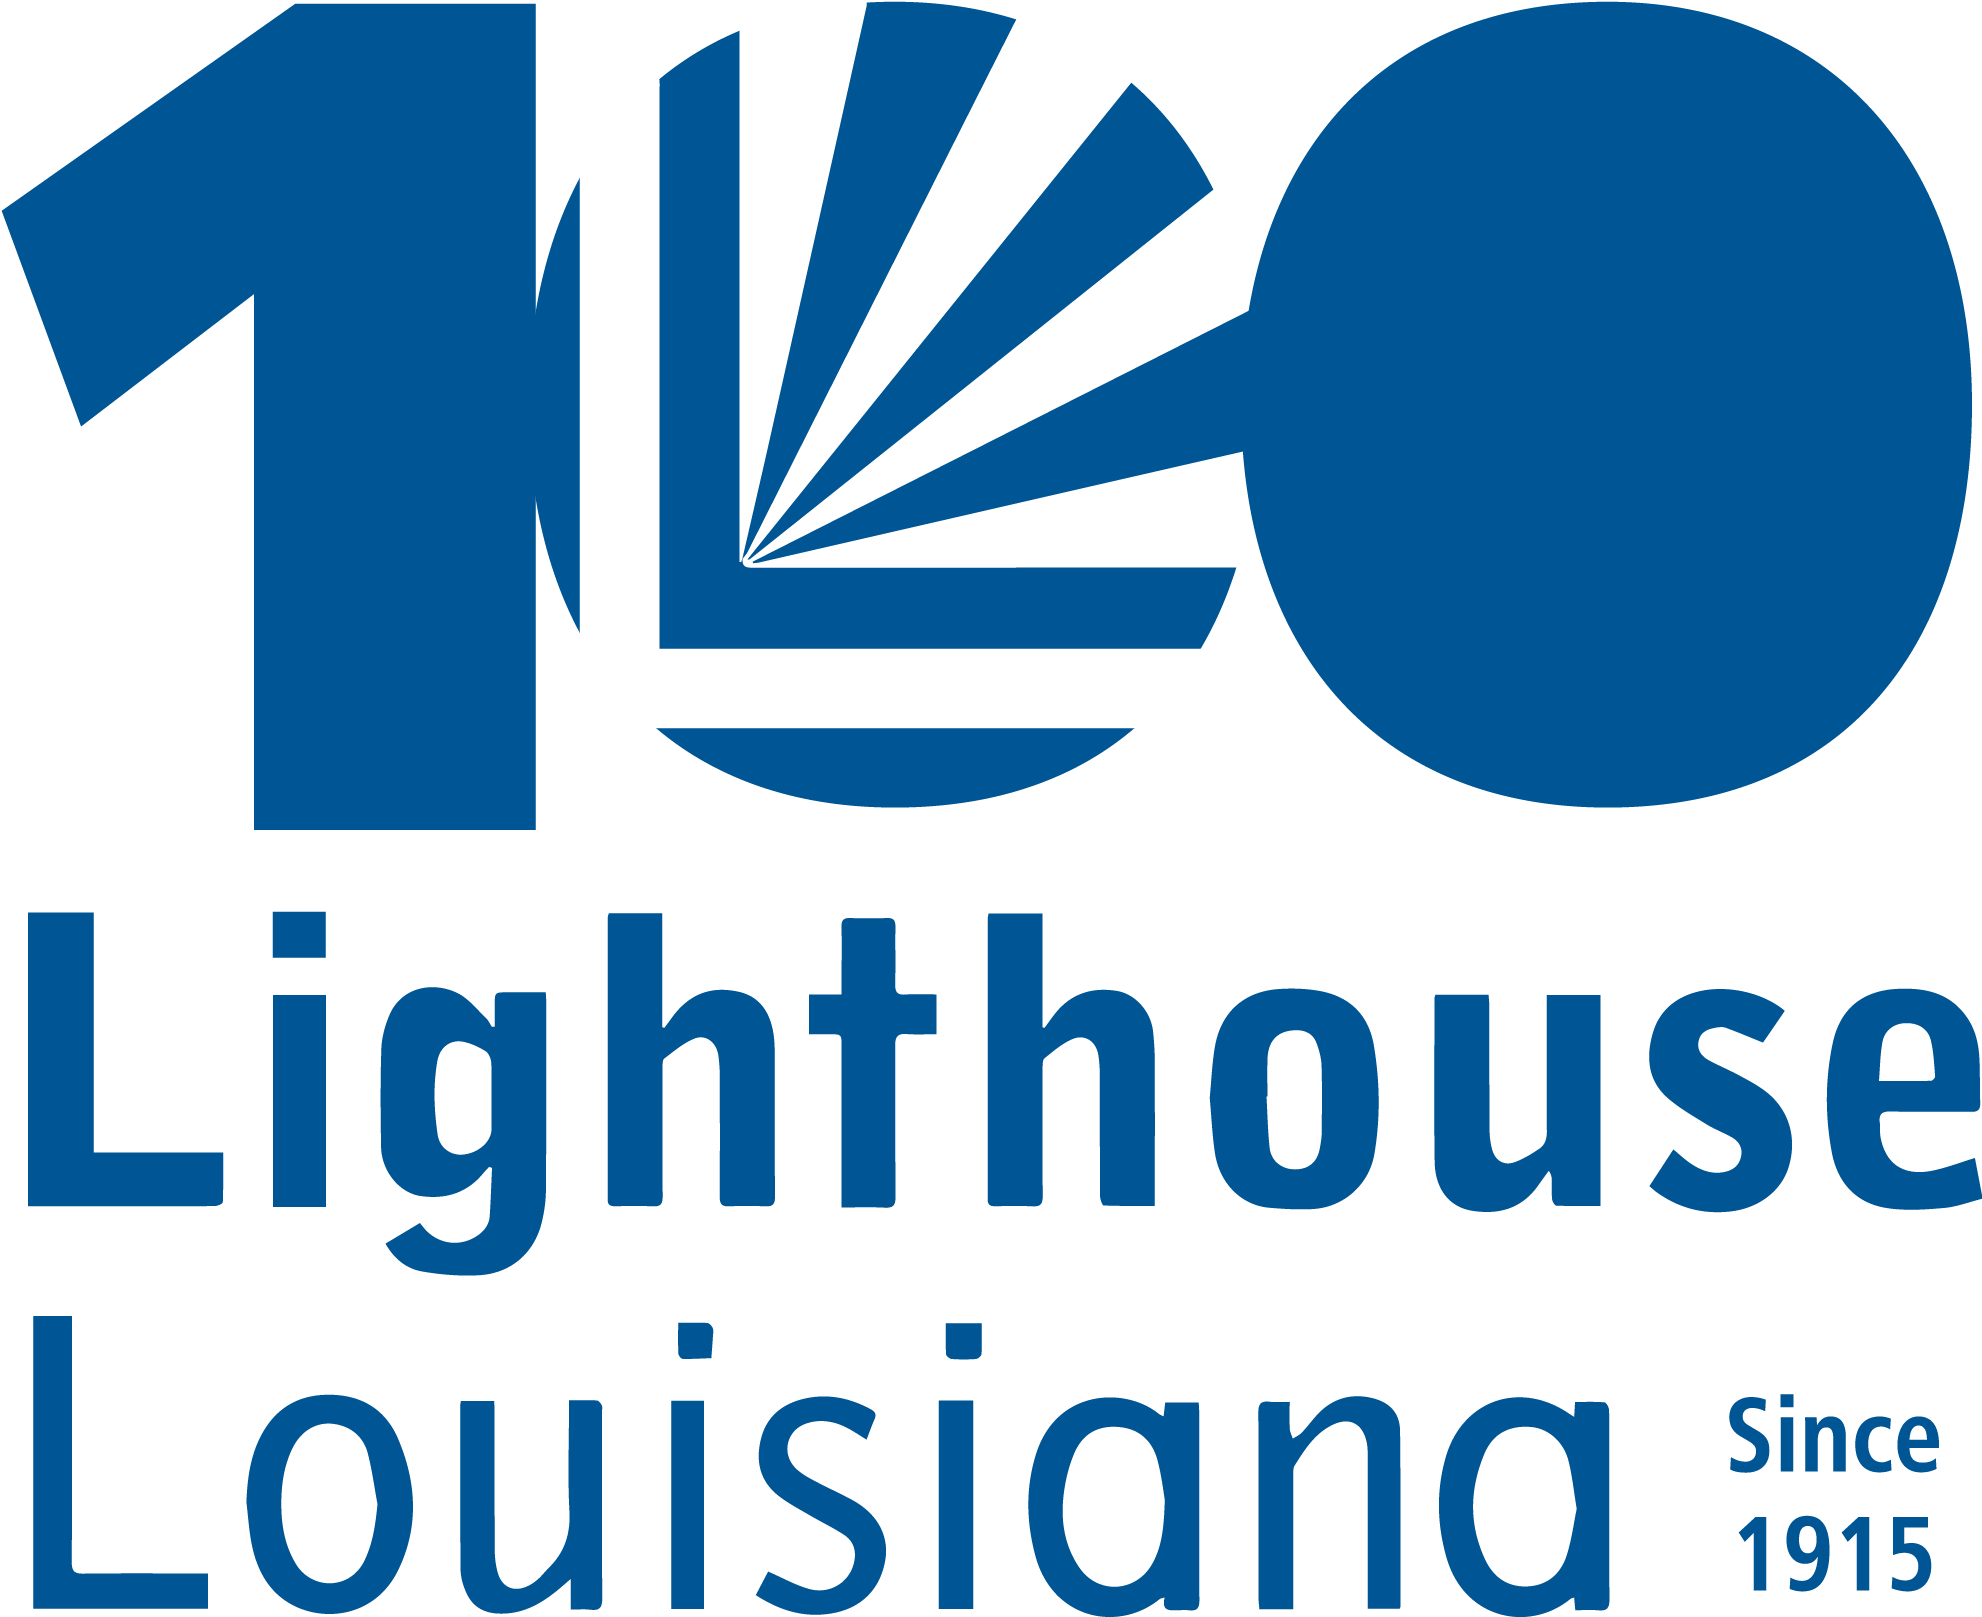 Lighthouse Louisiana - Lighthouse Louisiana (2500x2500)